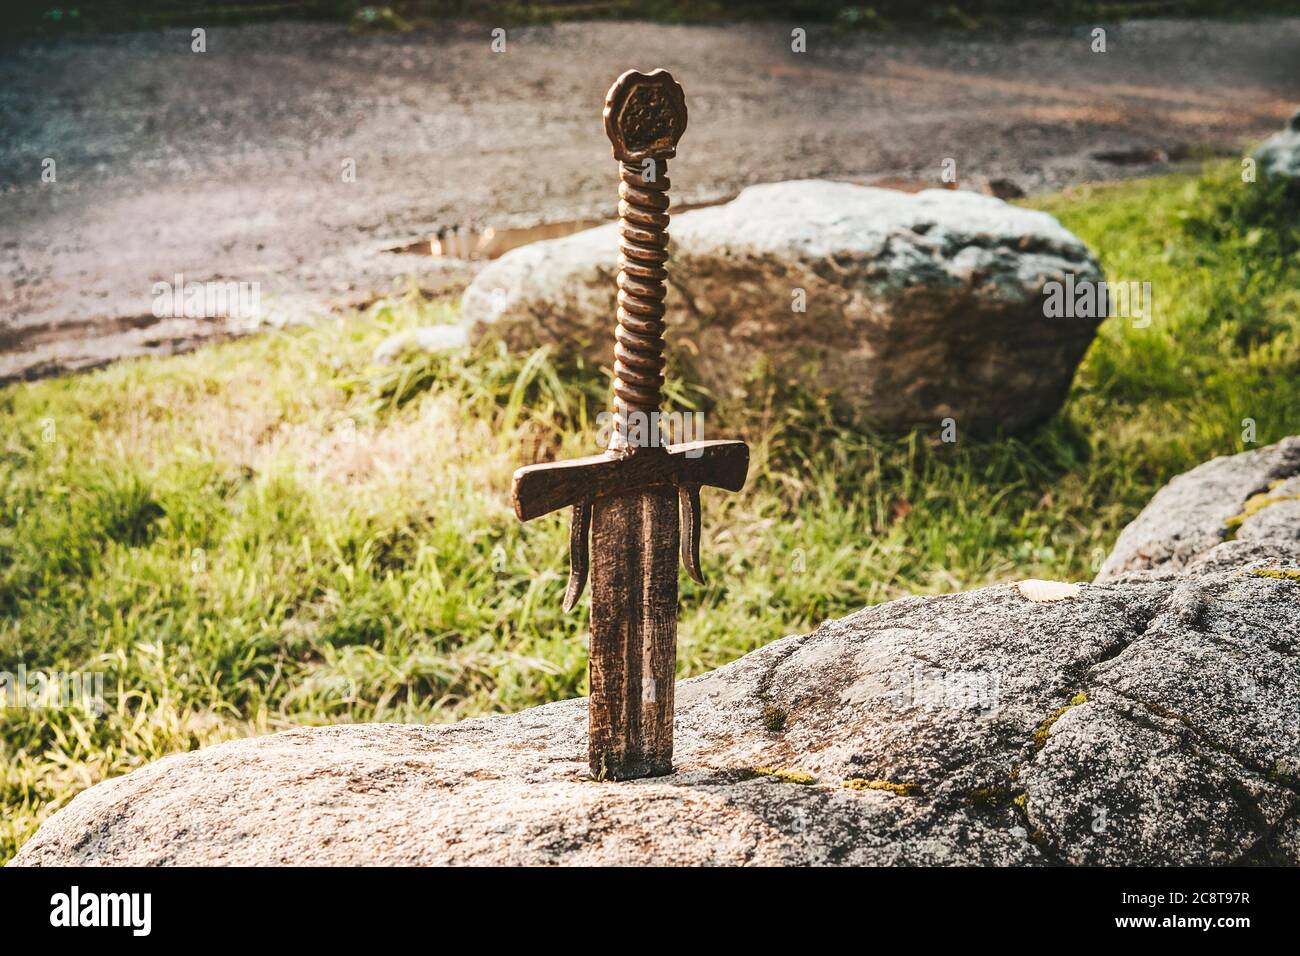 Célèbre épée excalibur du roi Arthur coincé dans le rocher. Armes de la légende Pro King Arthur. Banque D'Images